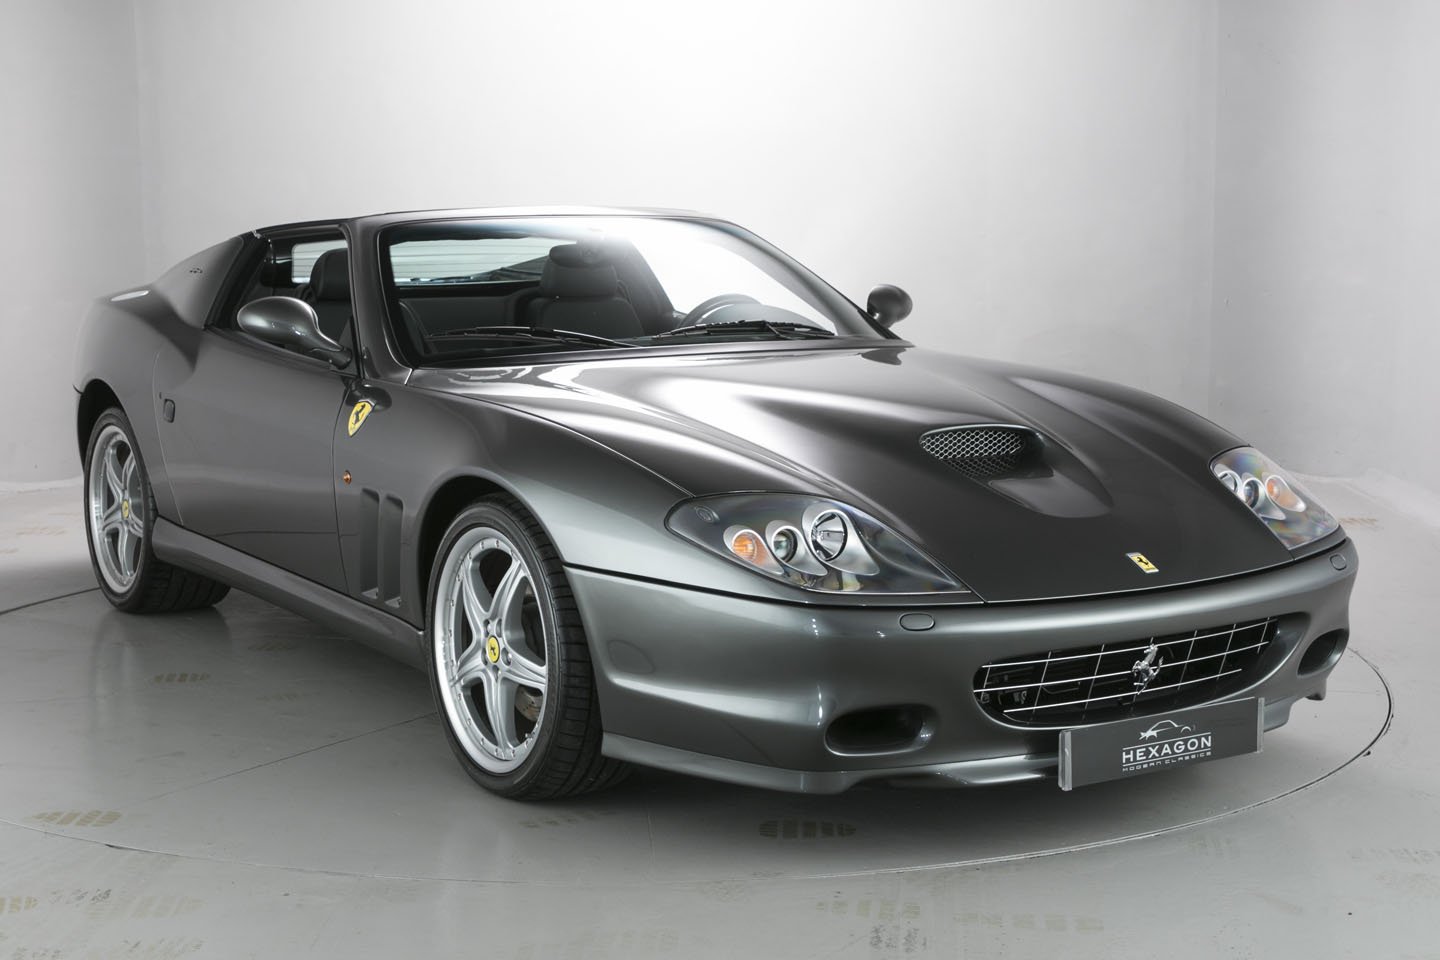 1234289_Ferrari 575 front side